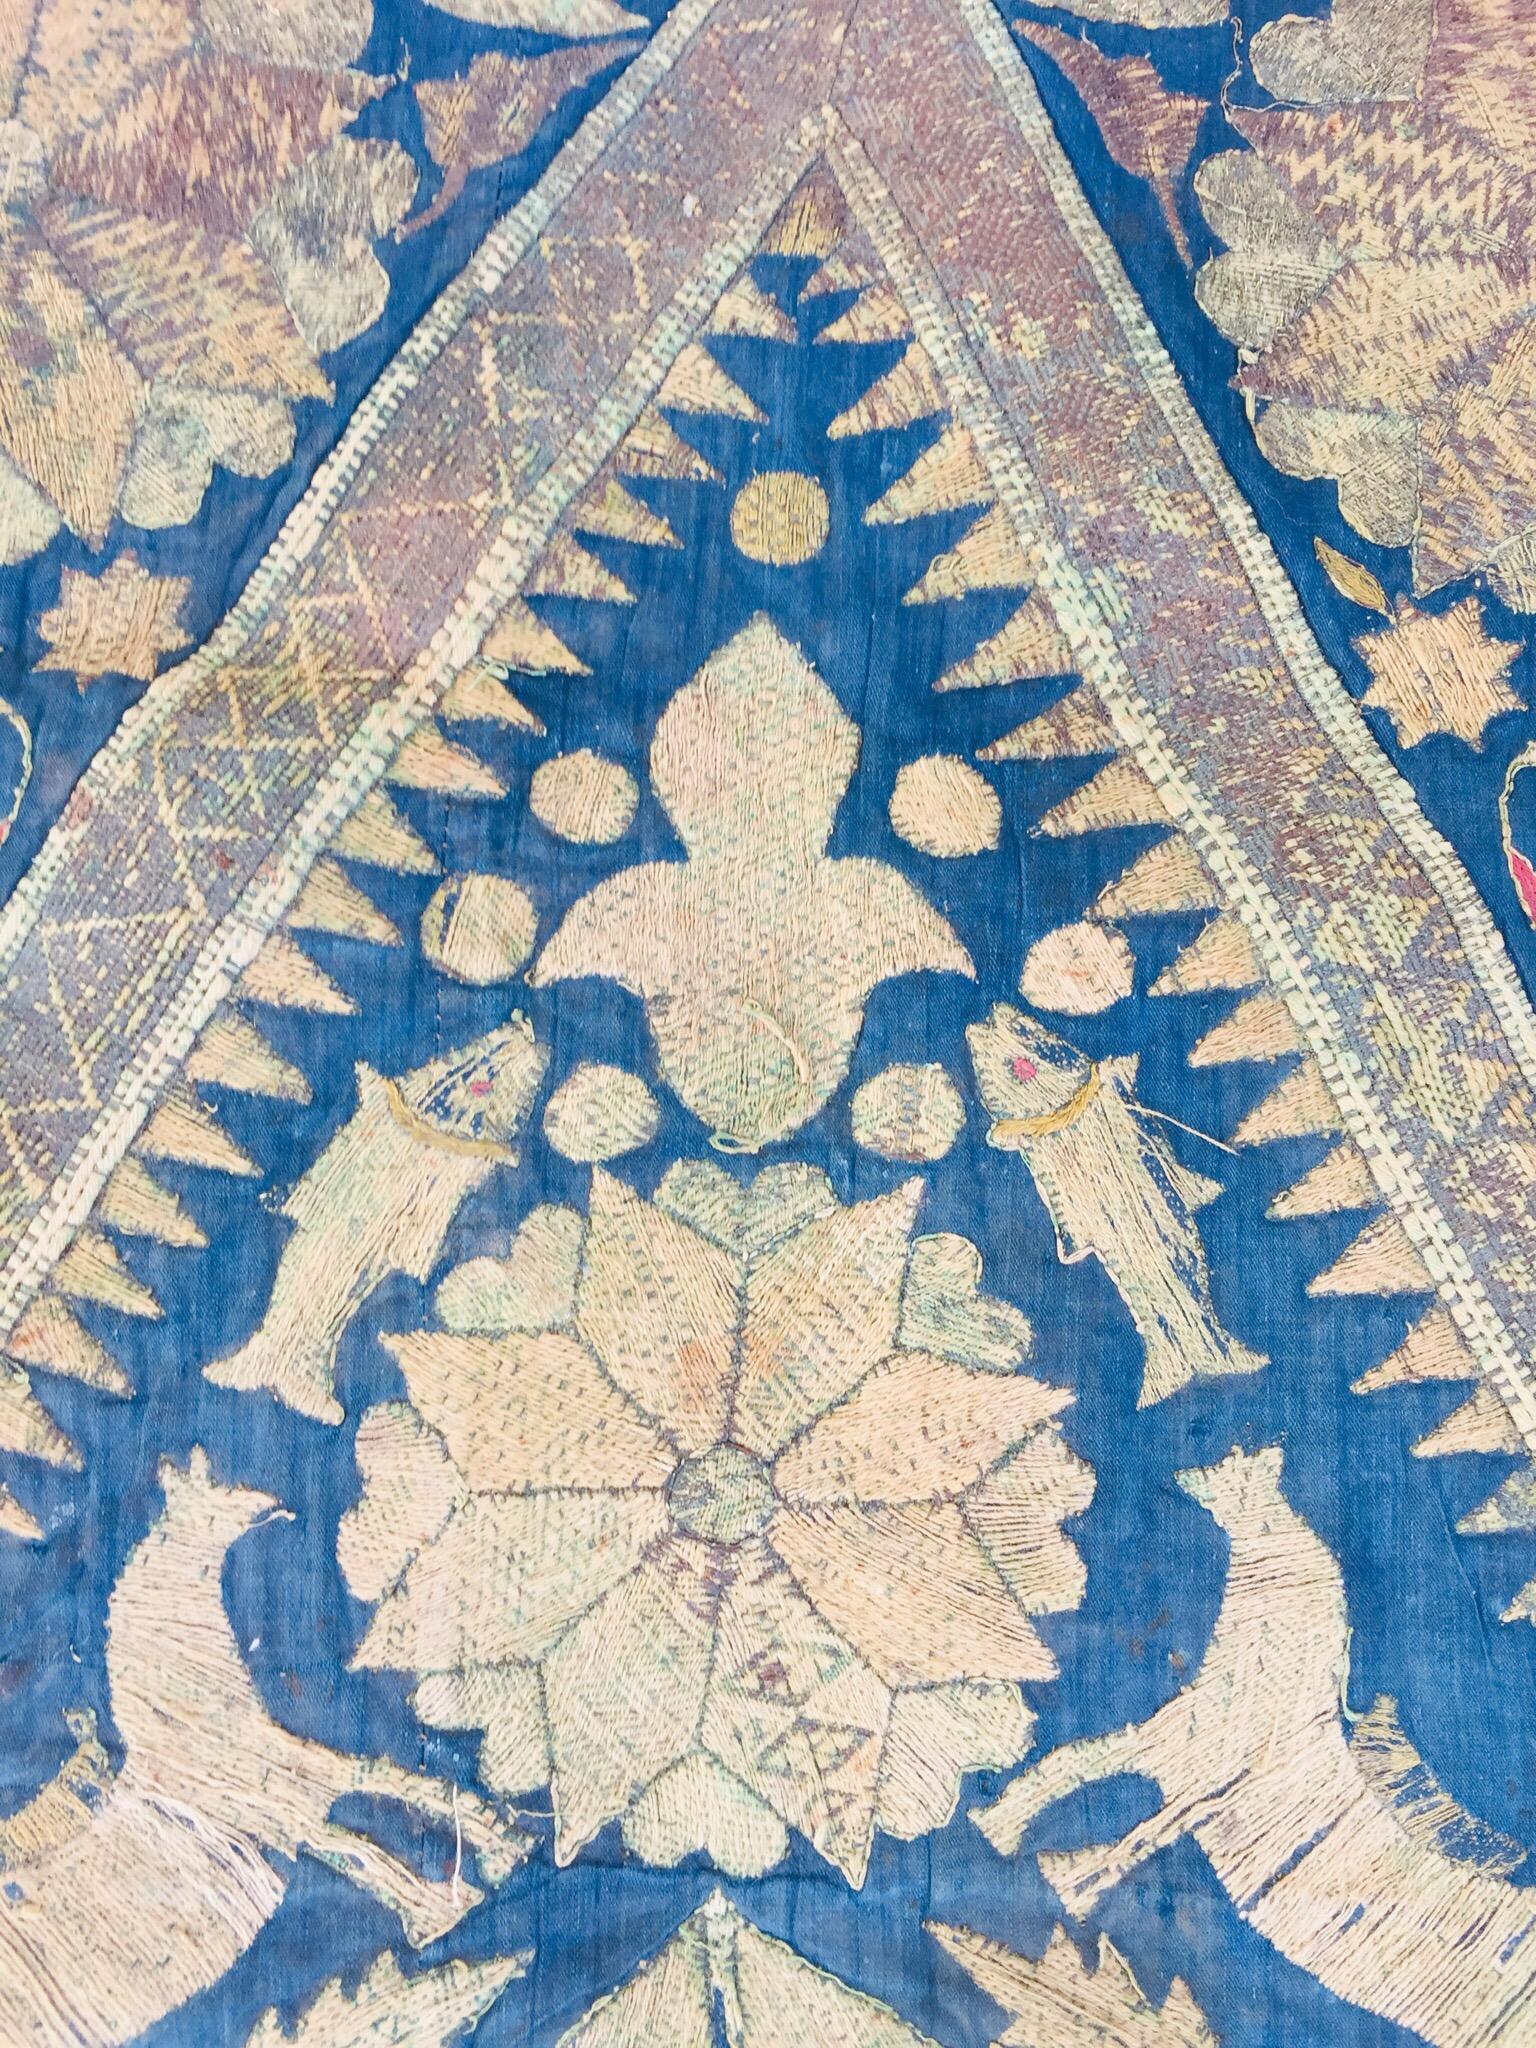 19th Century Moorish Islamic Ottoman Empire Textile Metallic Embroidered 7